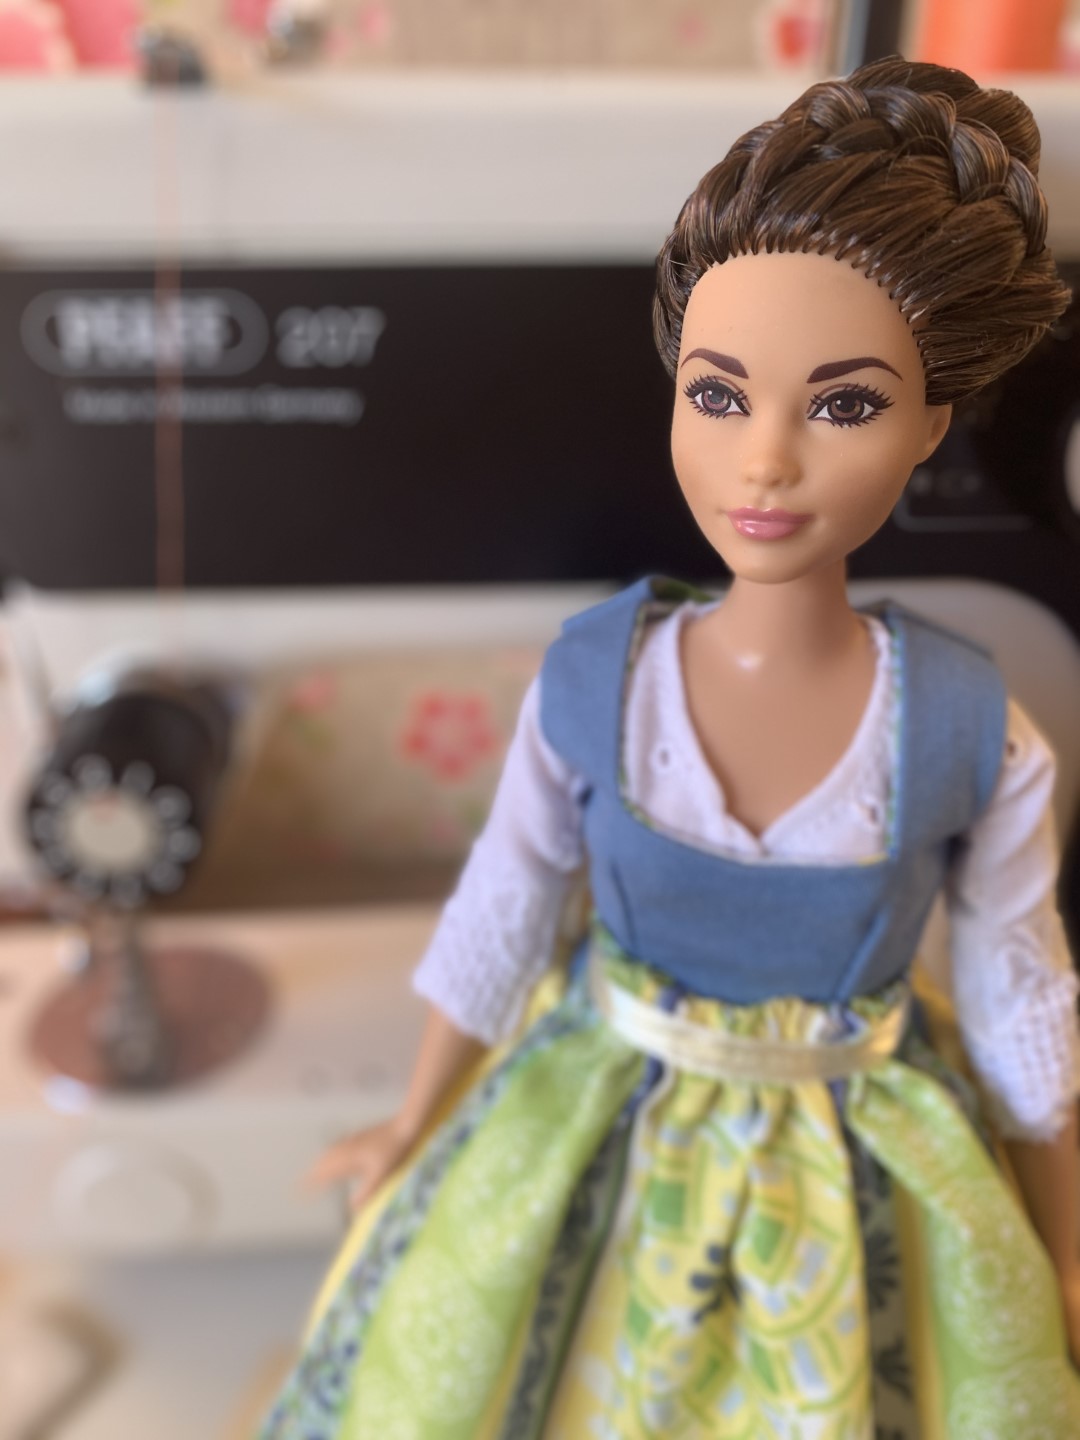 Auf Instagram erzählt Claudia Geschichten mit ihren Puppen